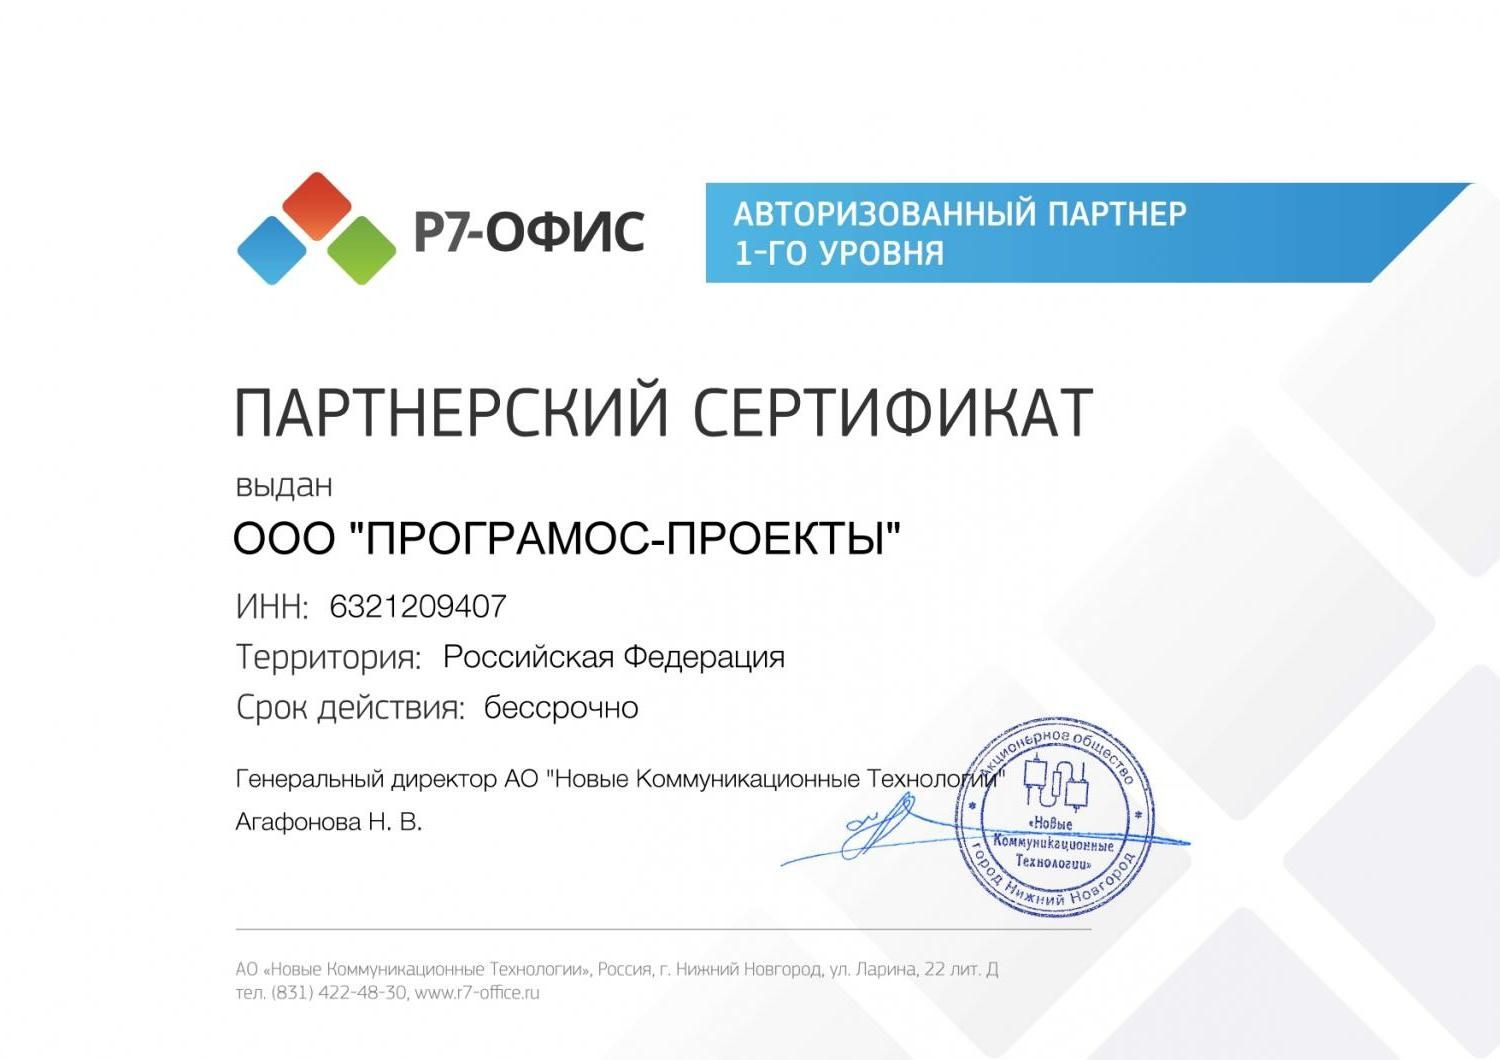 Партнерский сертификат Р7-ОФИС